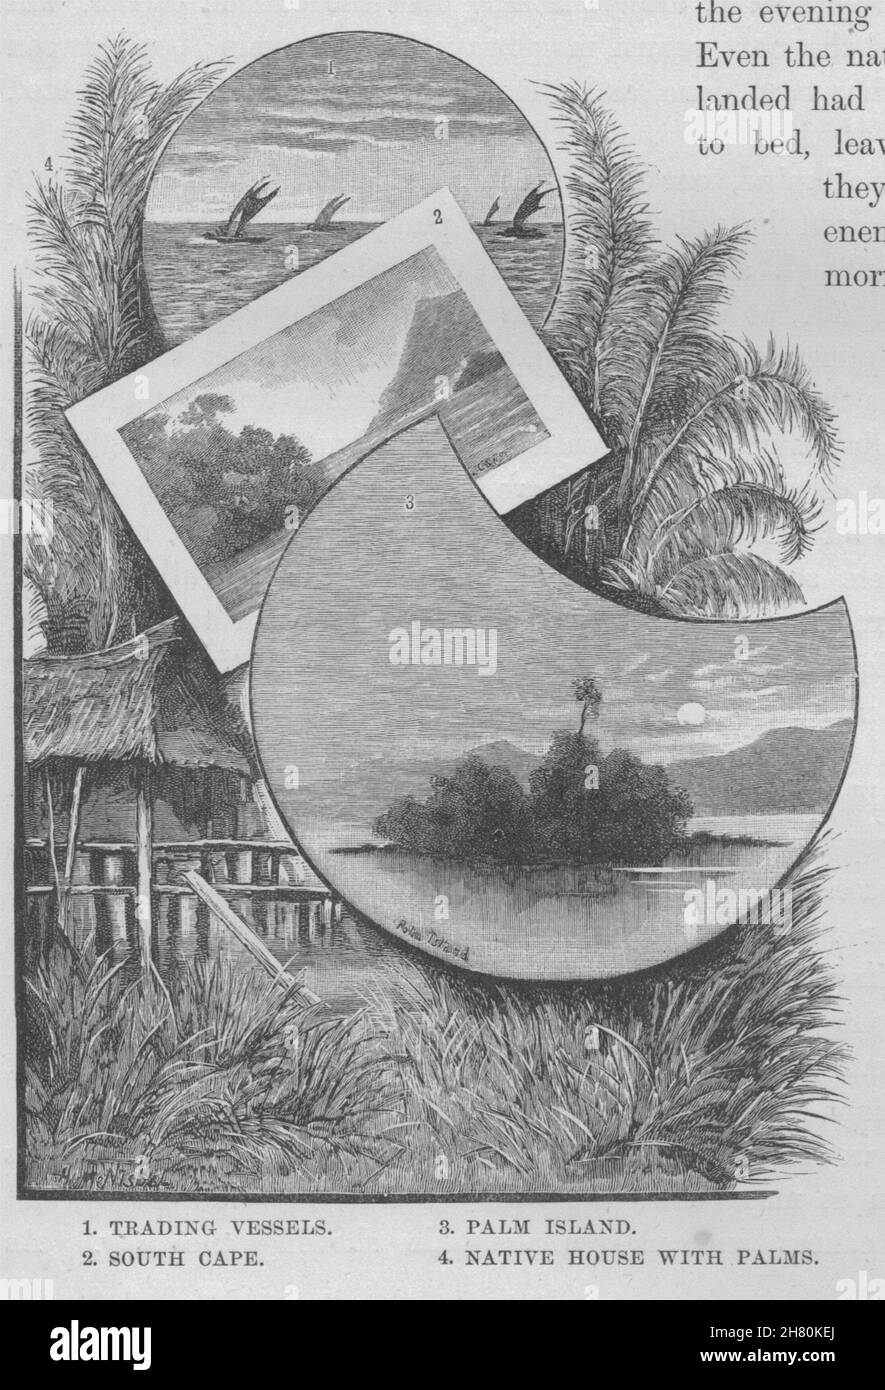 Les navires commerciaux. Cap Sud. Palm Island. Maison natale de palmiers. Guinée 1890 Banque D'Images